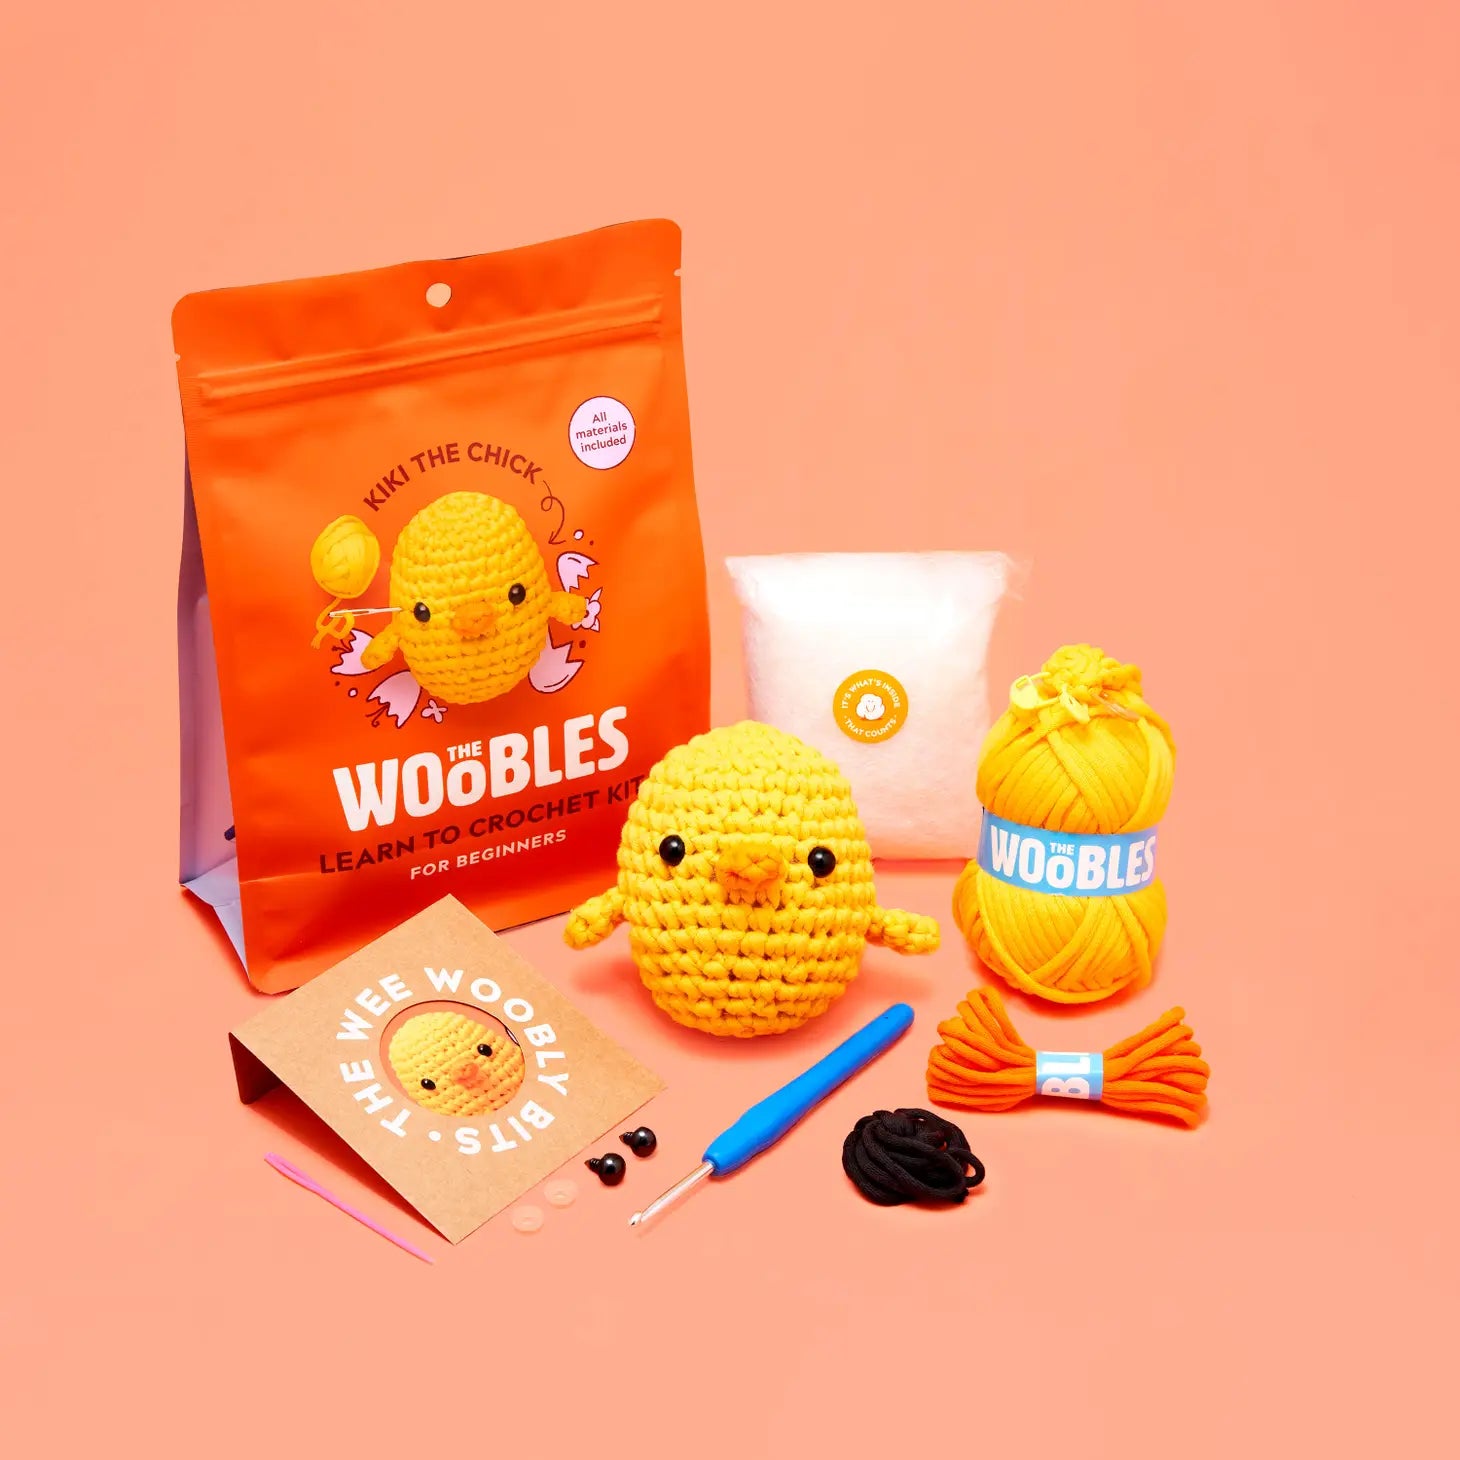 THE WOOBLES Beginner Crochet Kit! JoJo The Bunny! New!